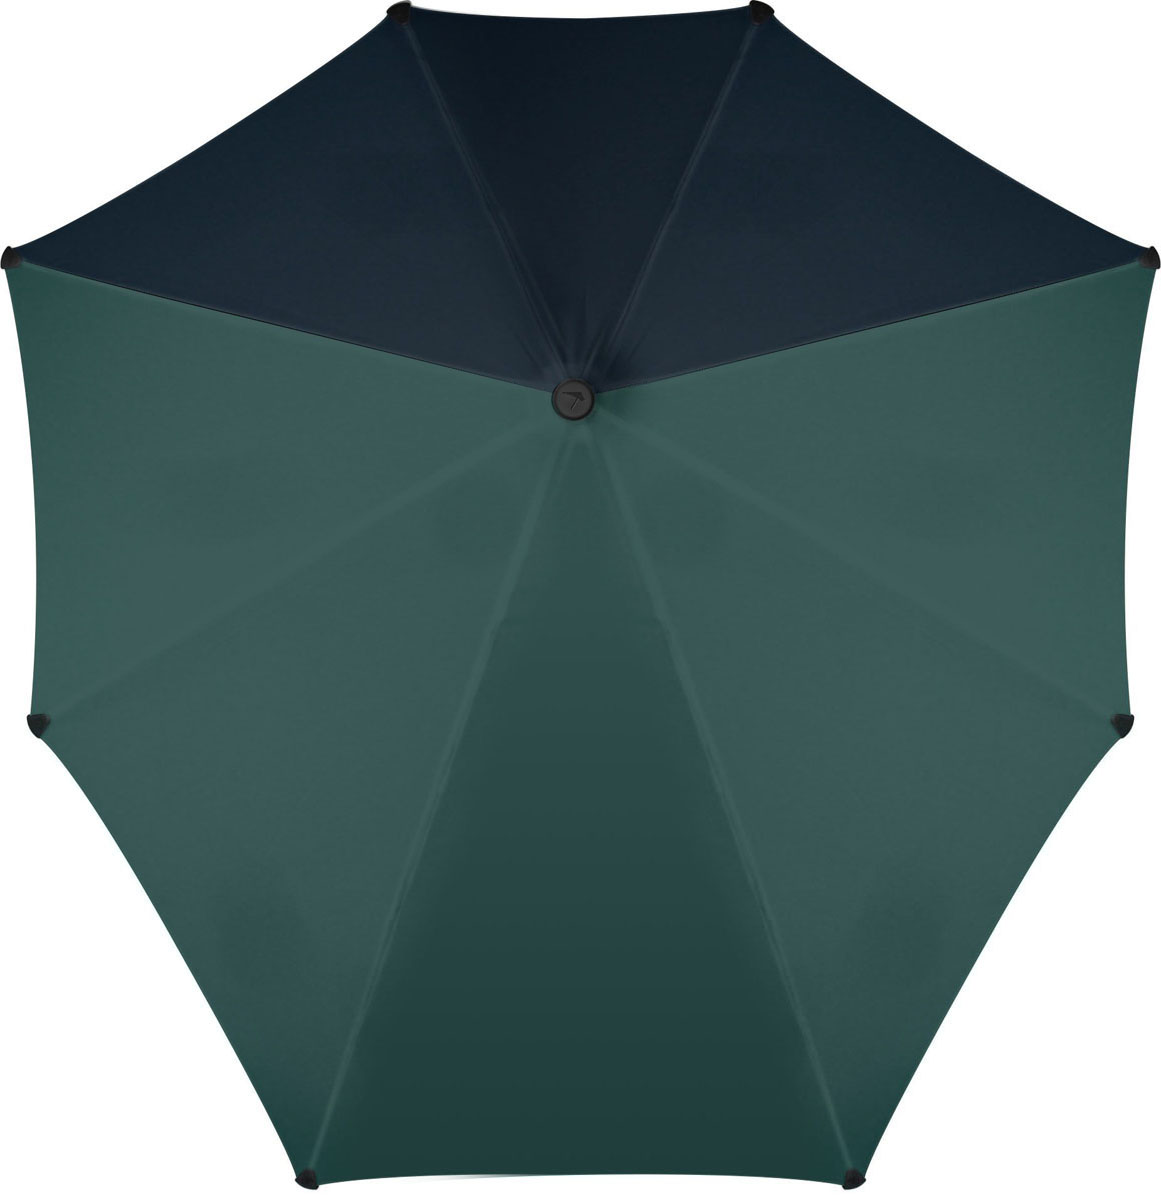 Зонт-трость Senz, цвет: синий, зеленый. 2011116